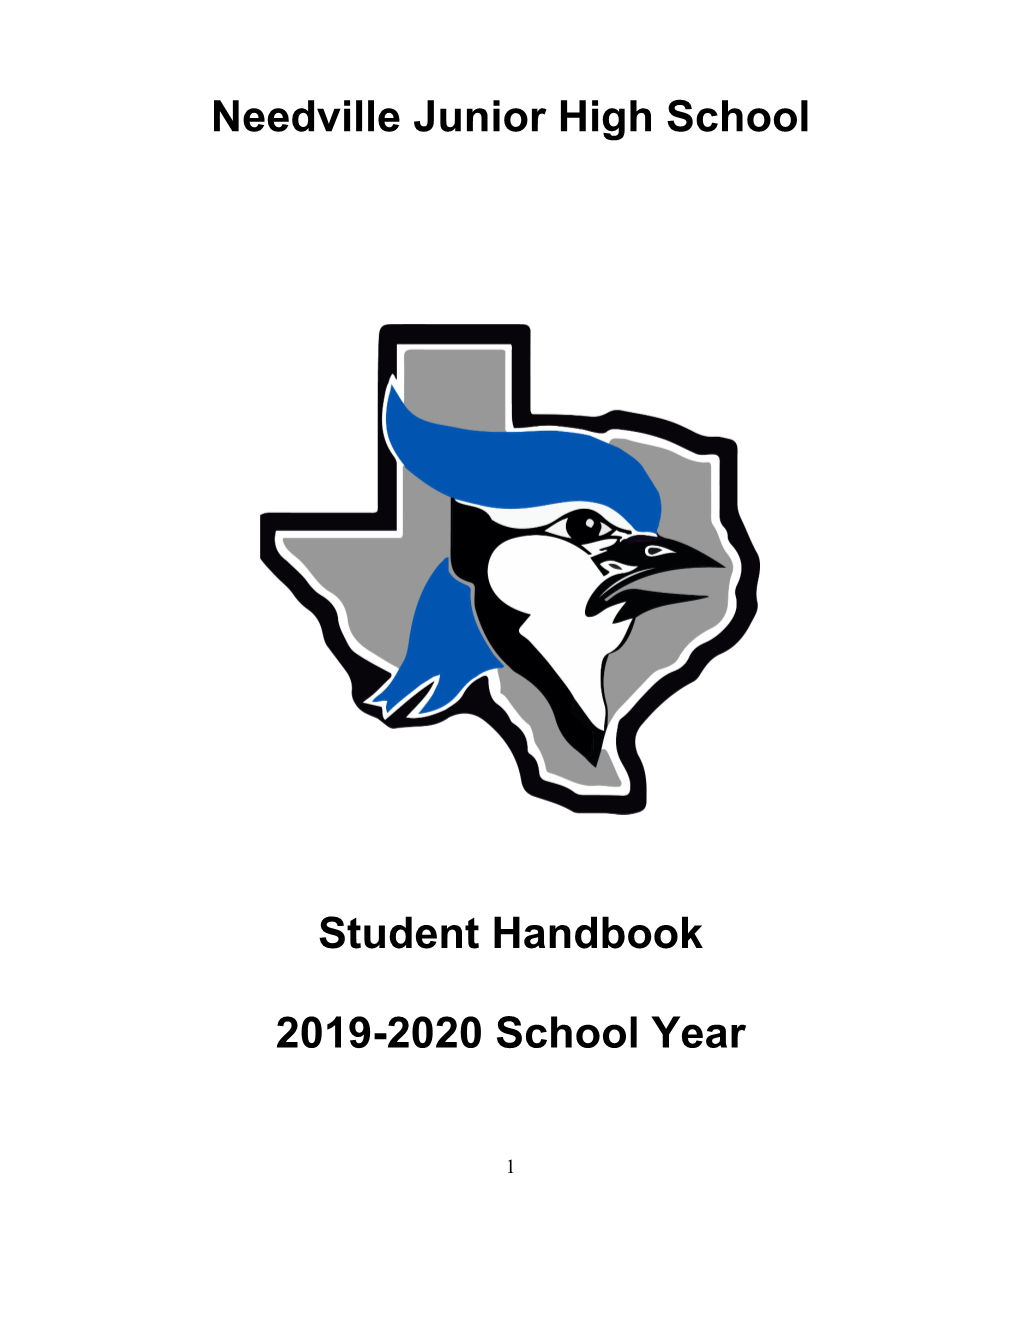 Needville Junior High School Student Handbook 2019-2020 School Year